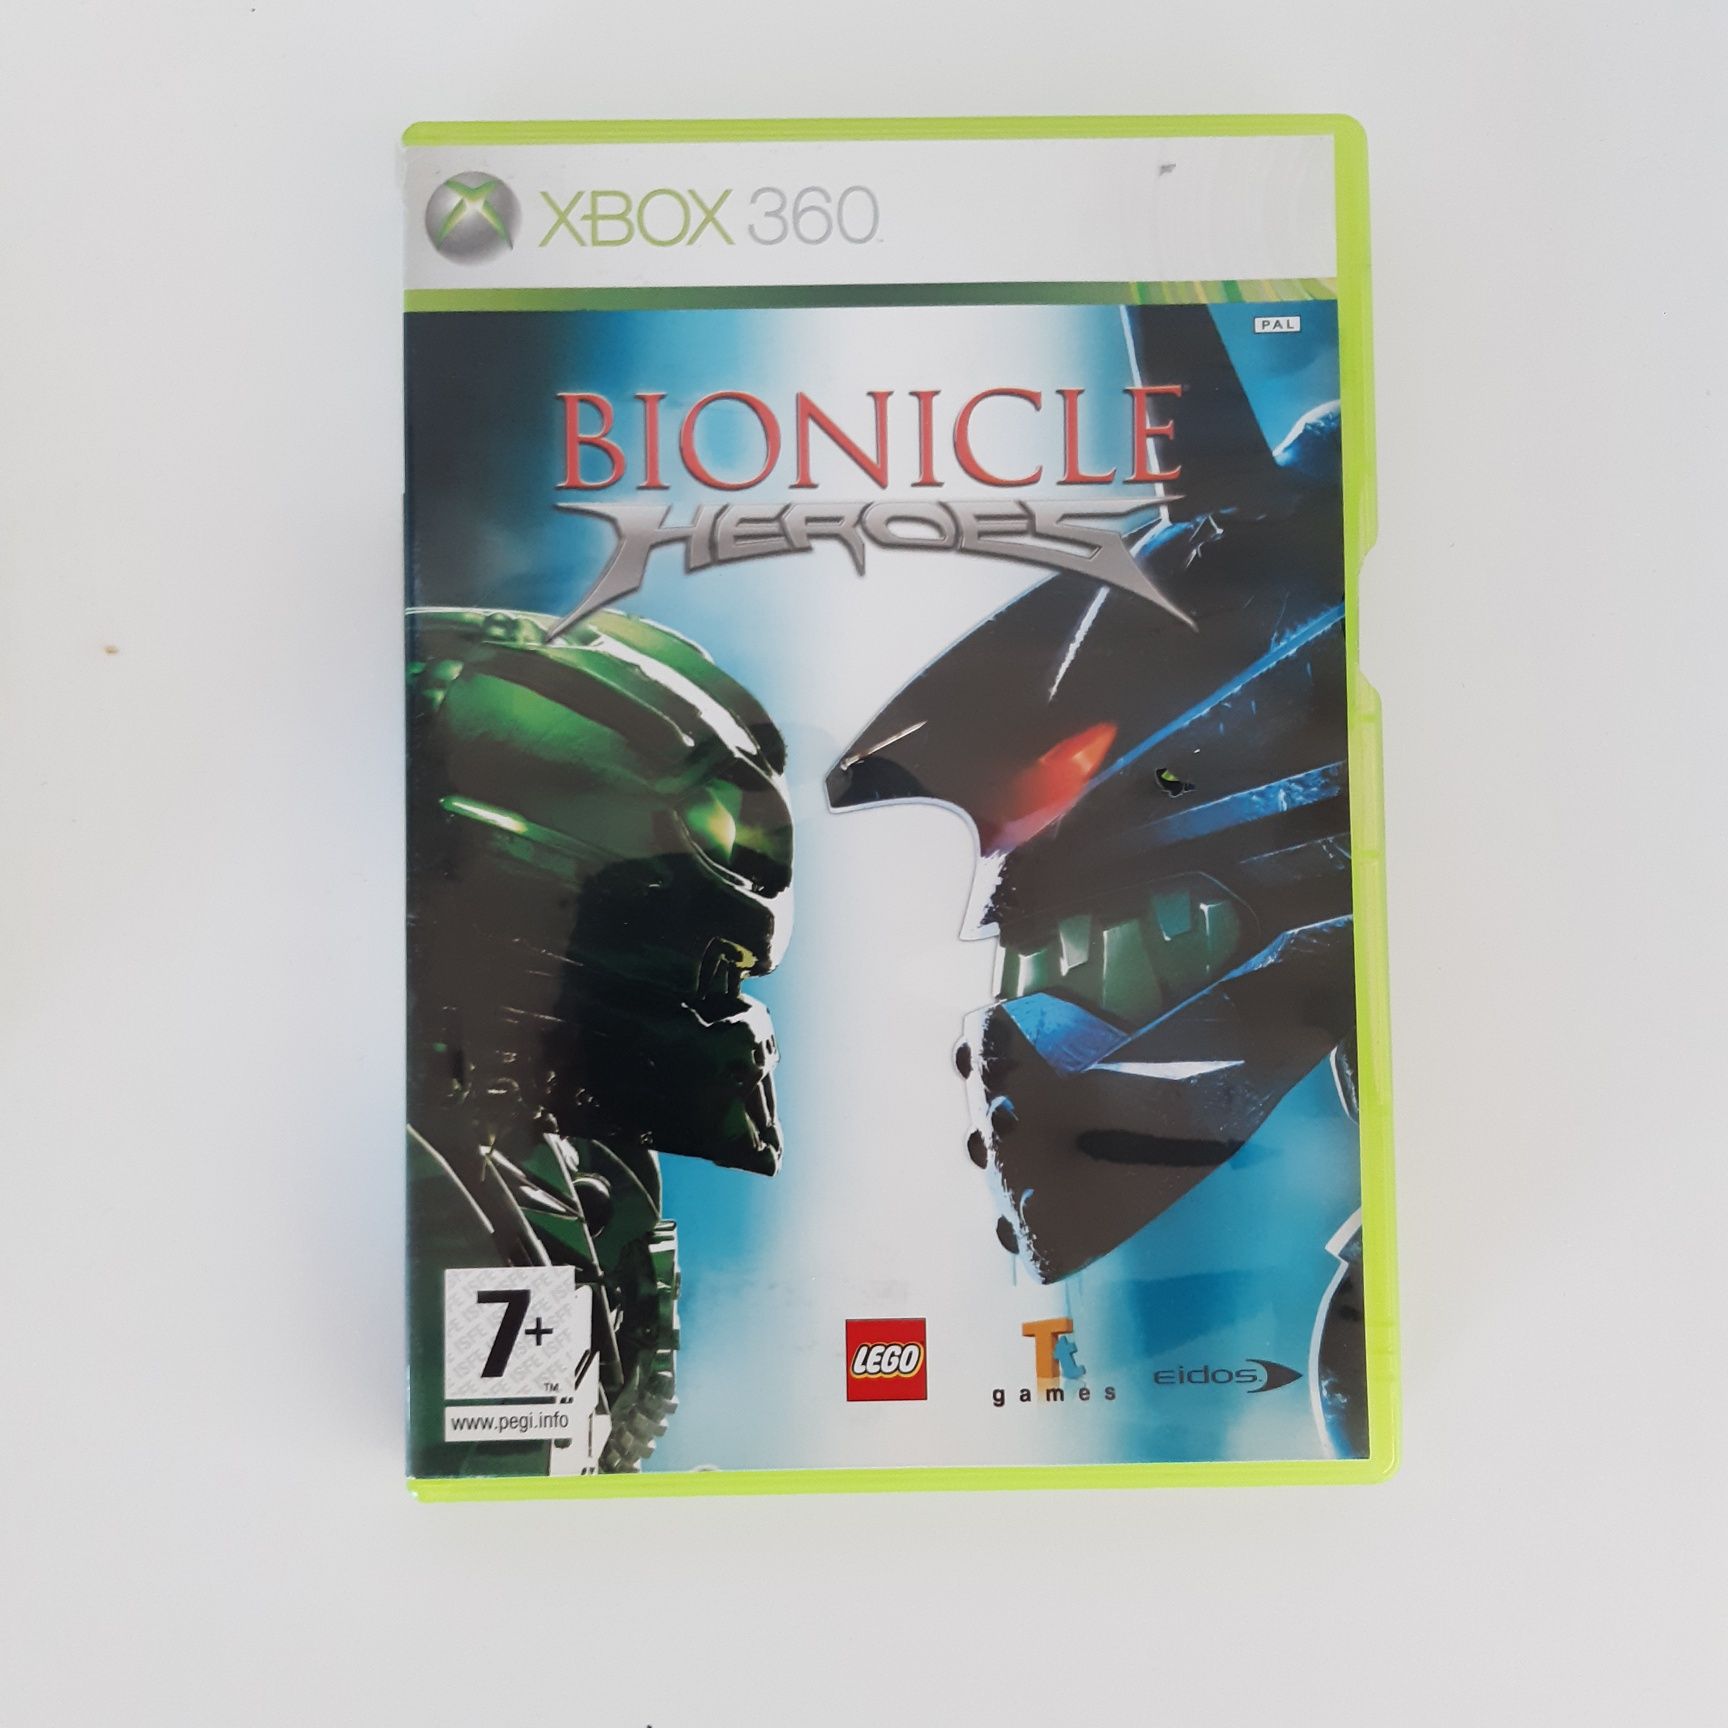 Gra Bionicle heroes xbox 360